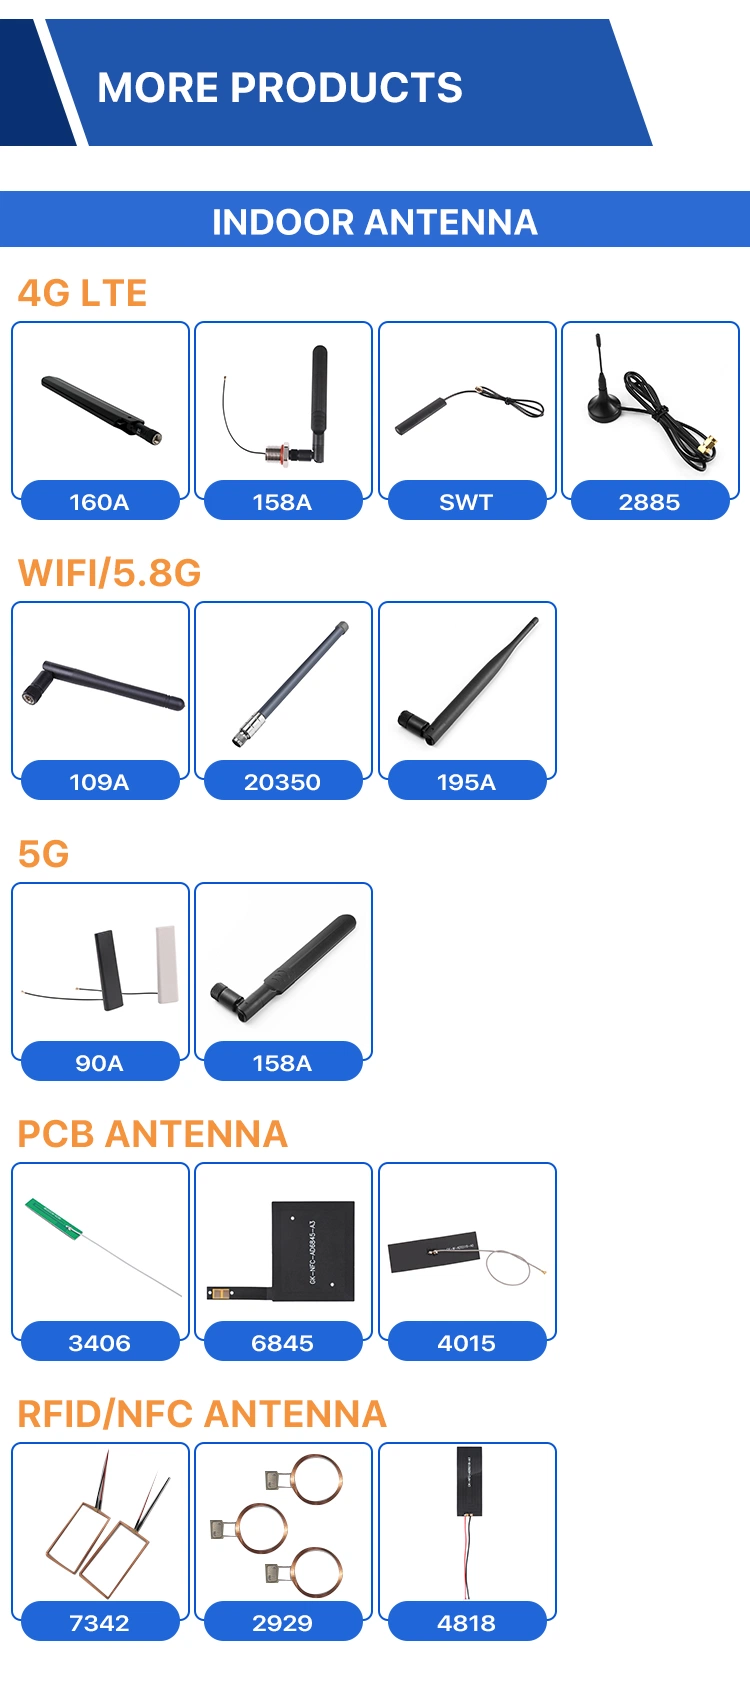 Wireless Router WiFi External Antenna, Free Sample WiFi 2.15dBi External Antenna Used for WiFi/WLAN Networking 2.4G WiFi Antenna